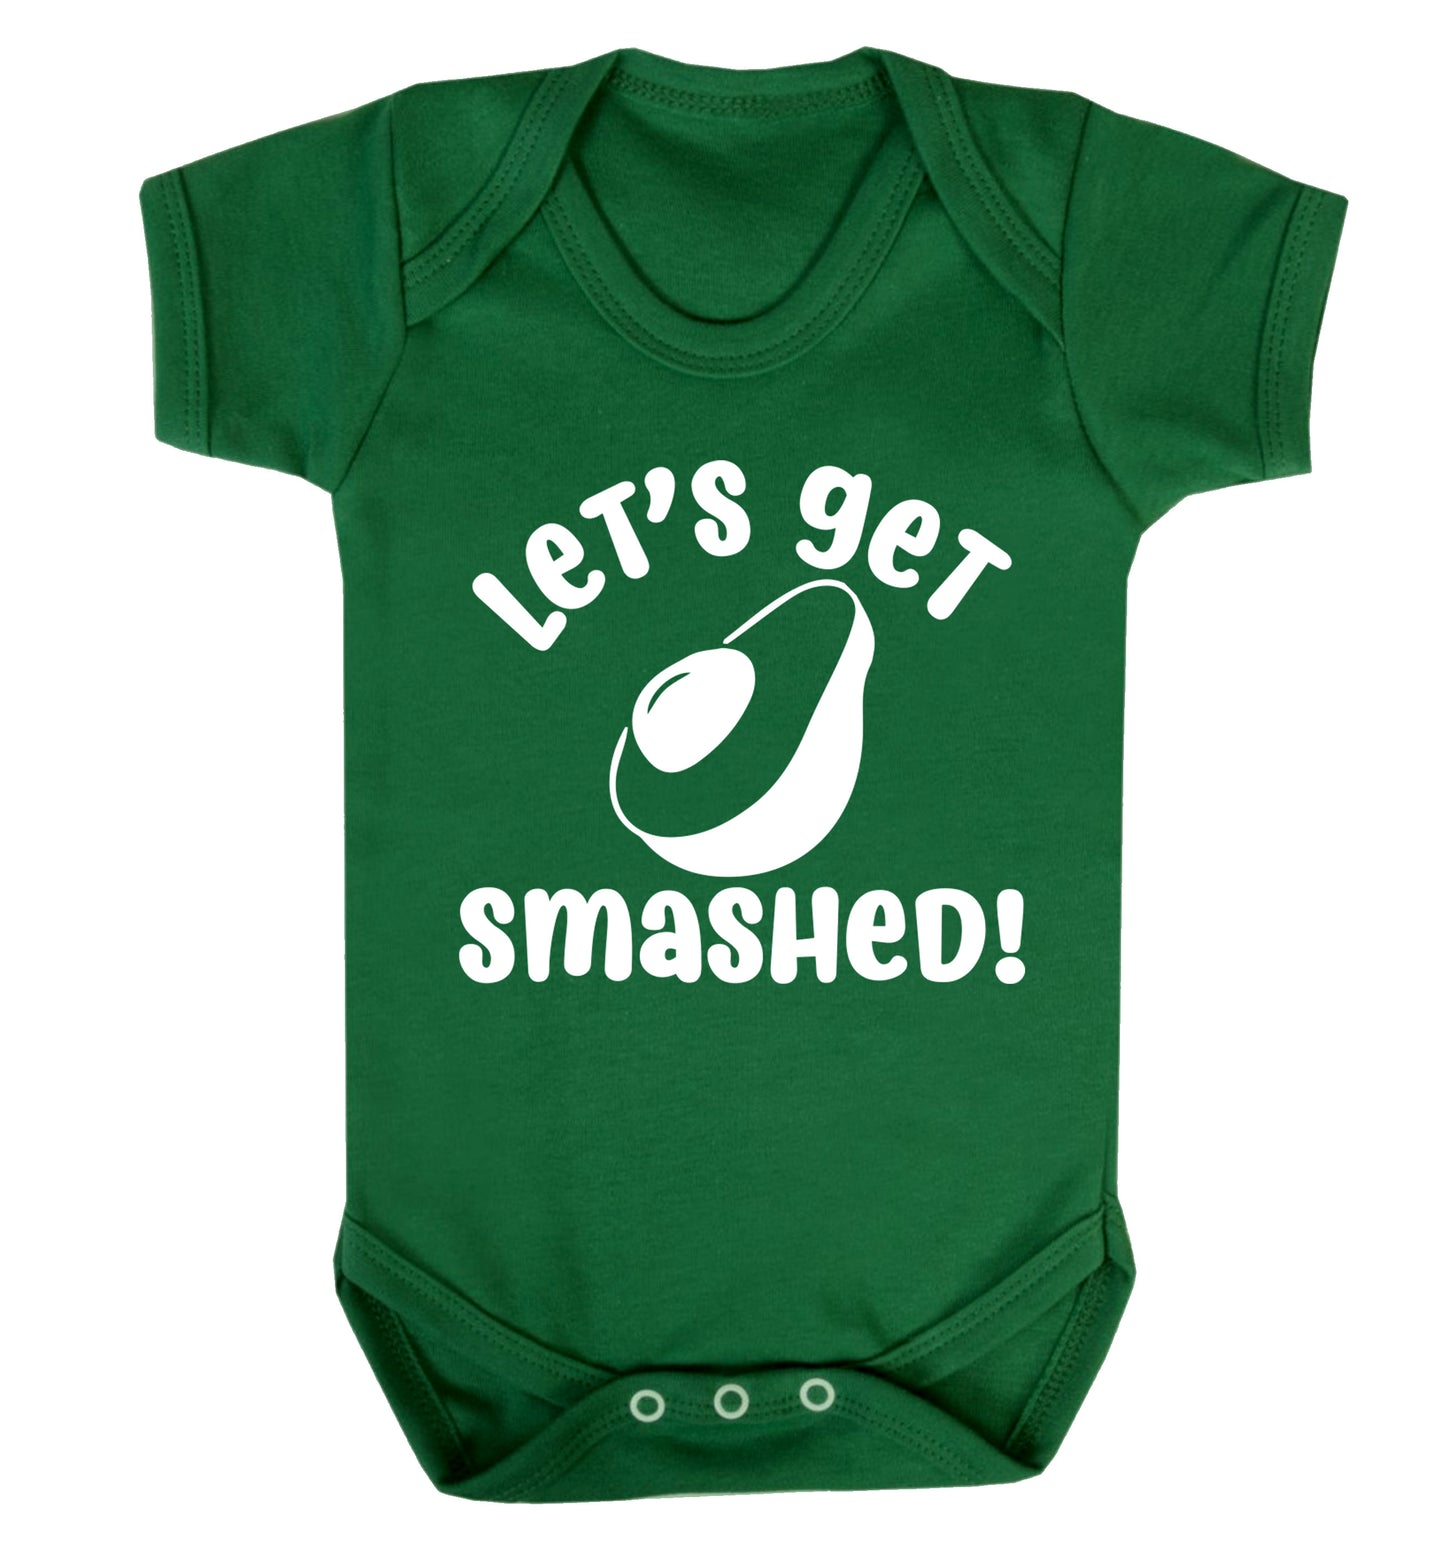 Let's get smashed Baby Vest green 18-24 months